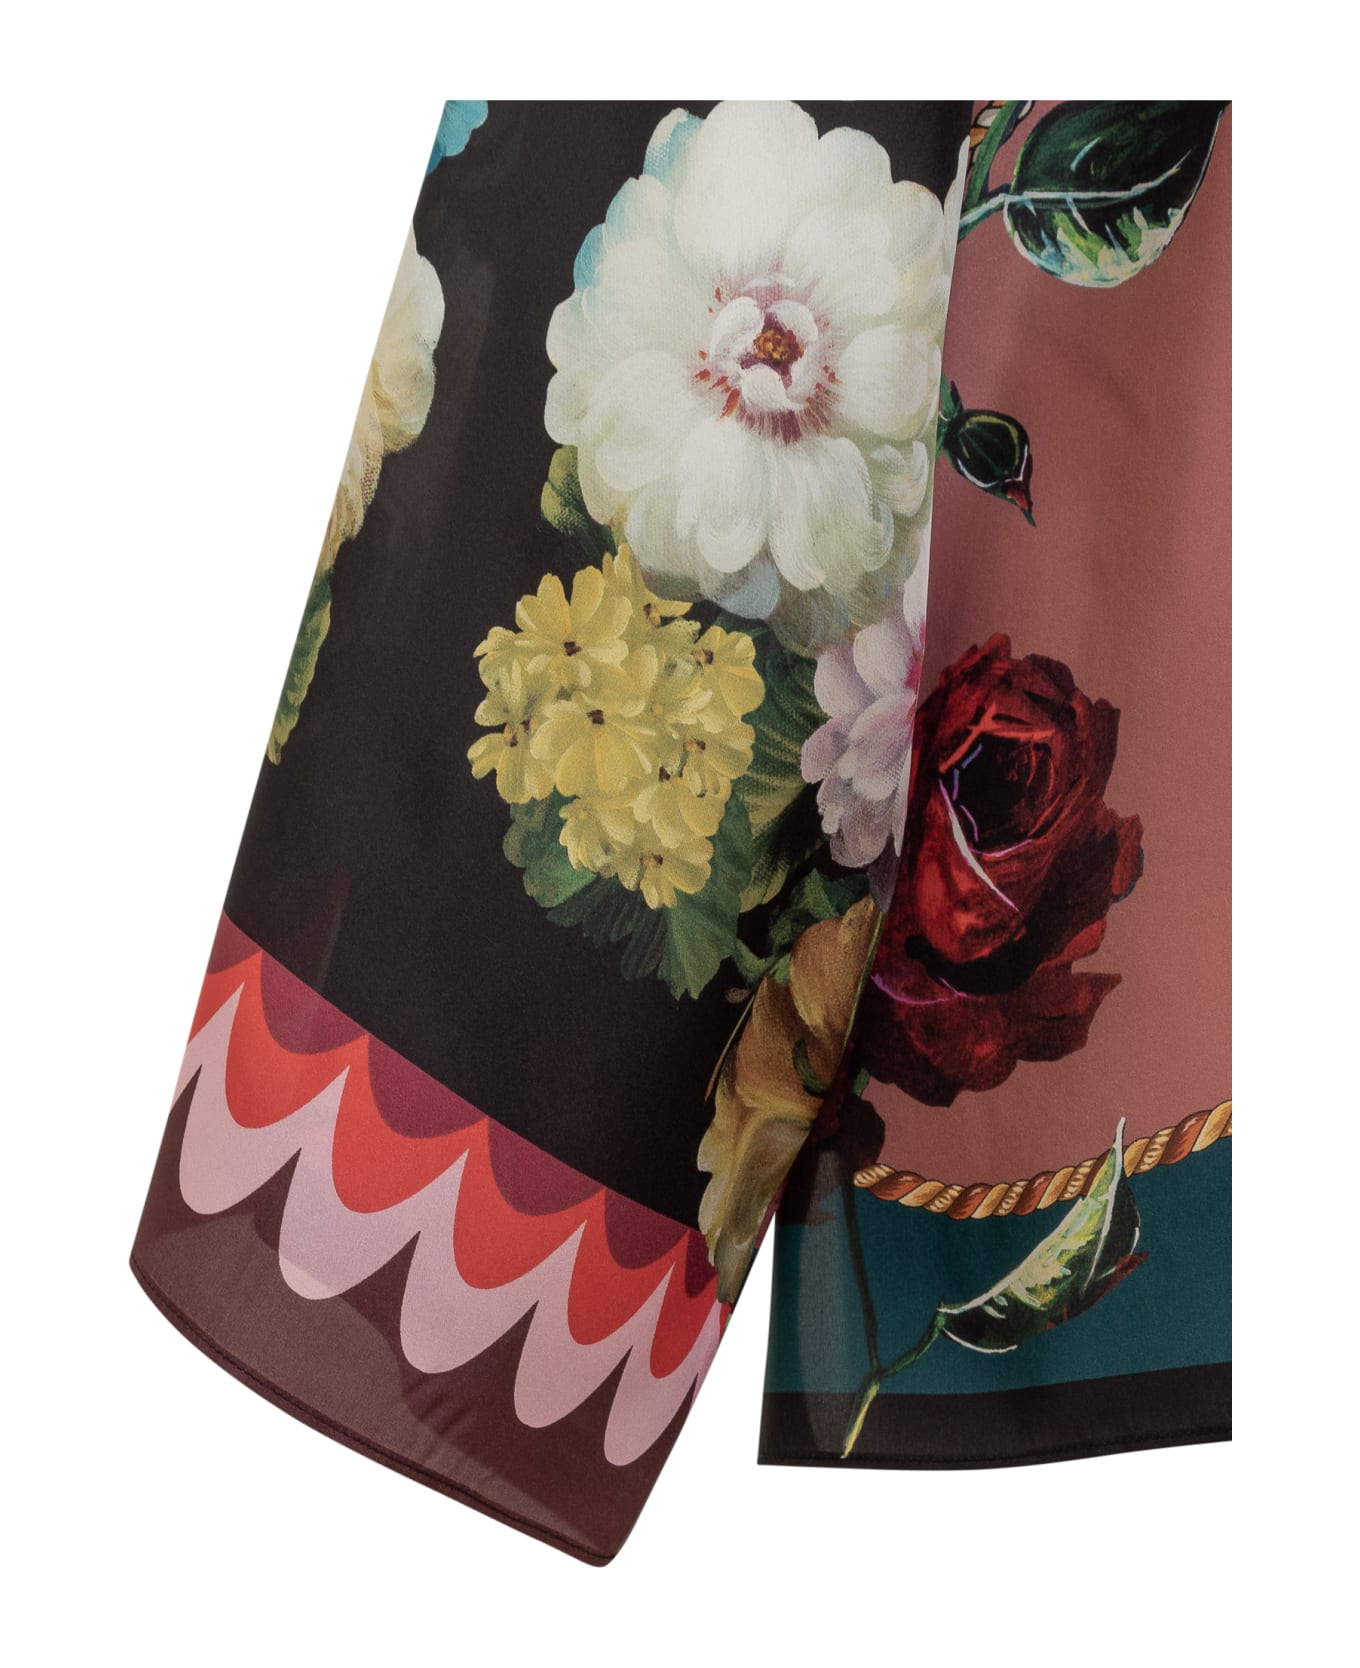 Dolce & Gabbana Floral Print Shirt - Variante Abbinata